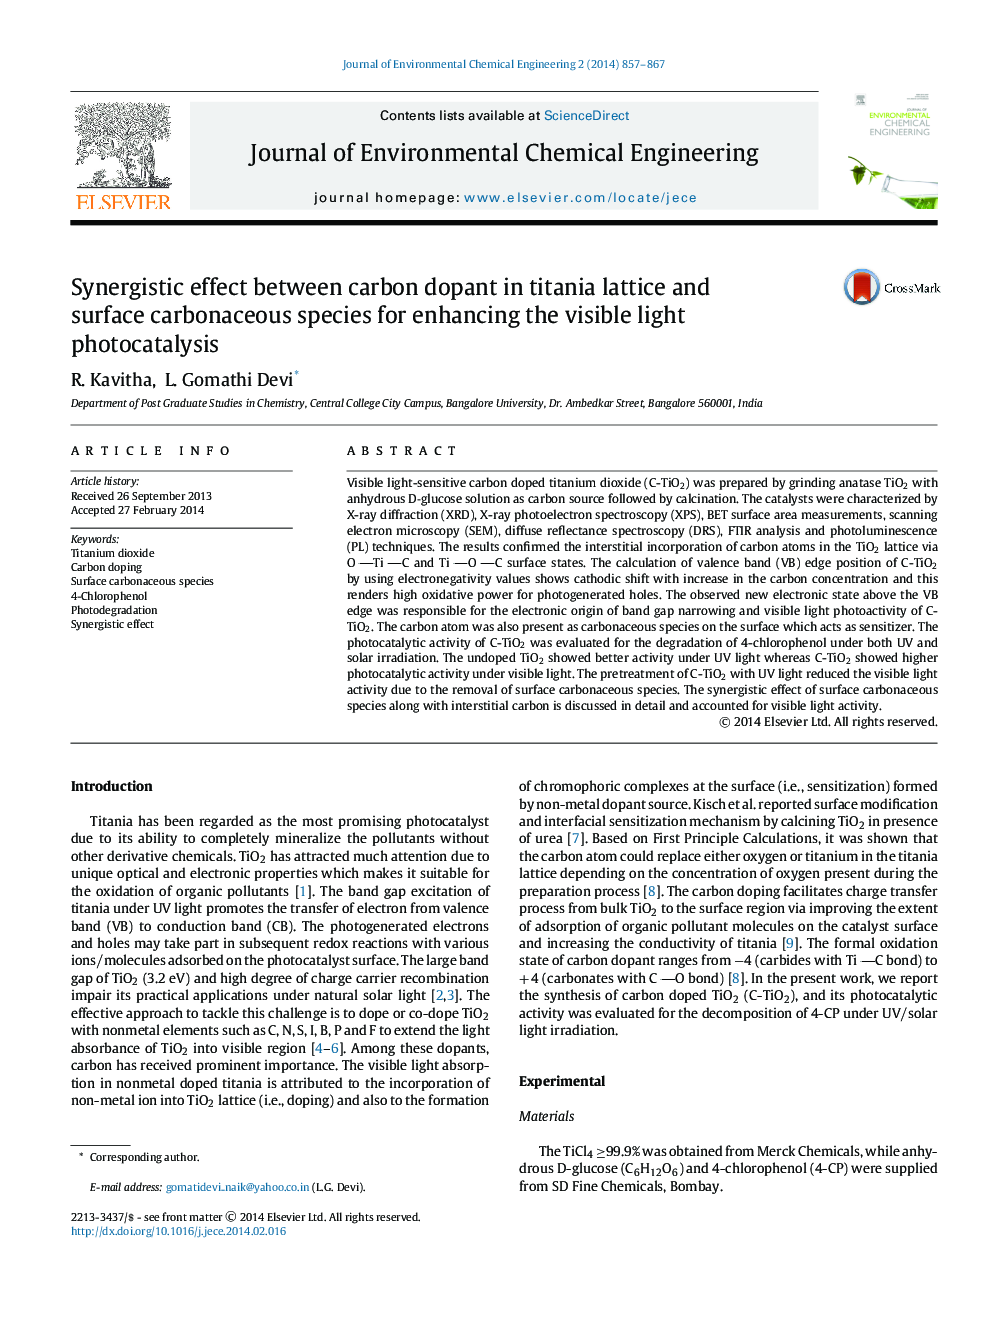 اثر هم افزایی بین دوز کربن در شبکه های تیتانیایی و گونه های کربن سطحی برای افزایش فوتوکاتالیز نور مرئی 